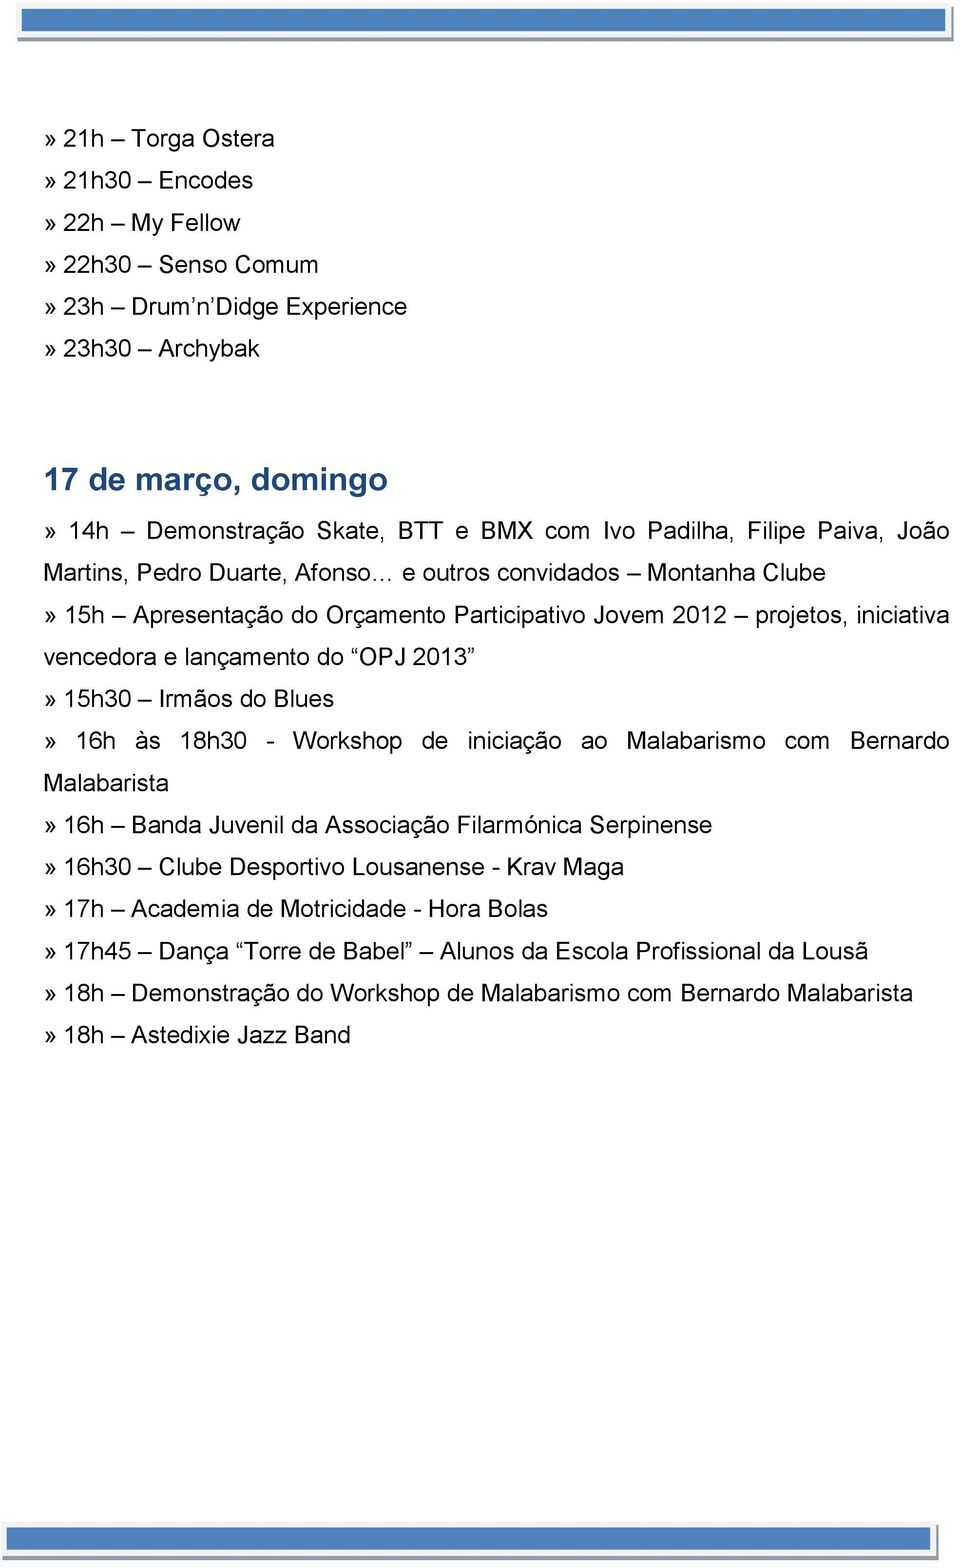 Irmãos do Blues» 16h às 18h30 - Workshop de iniciação ao Malabarismo com Bernardo Malabarista» 16h Banda Juvenil da Associação Filarmónica Serpinense» 16h30 Clube Desportivo Lousanense - Krav Maga»